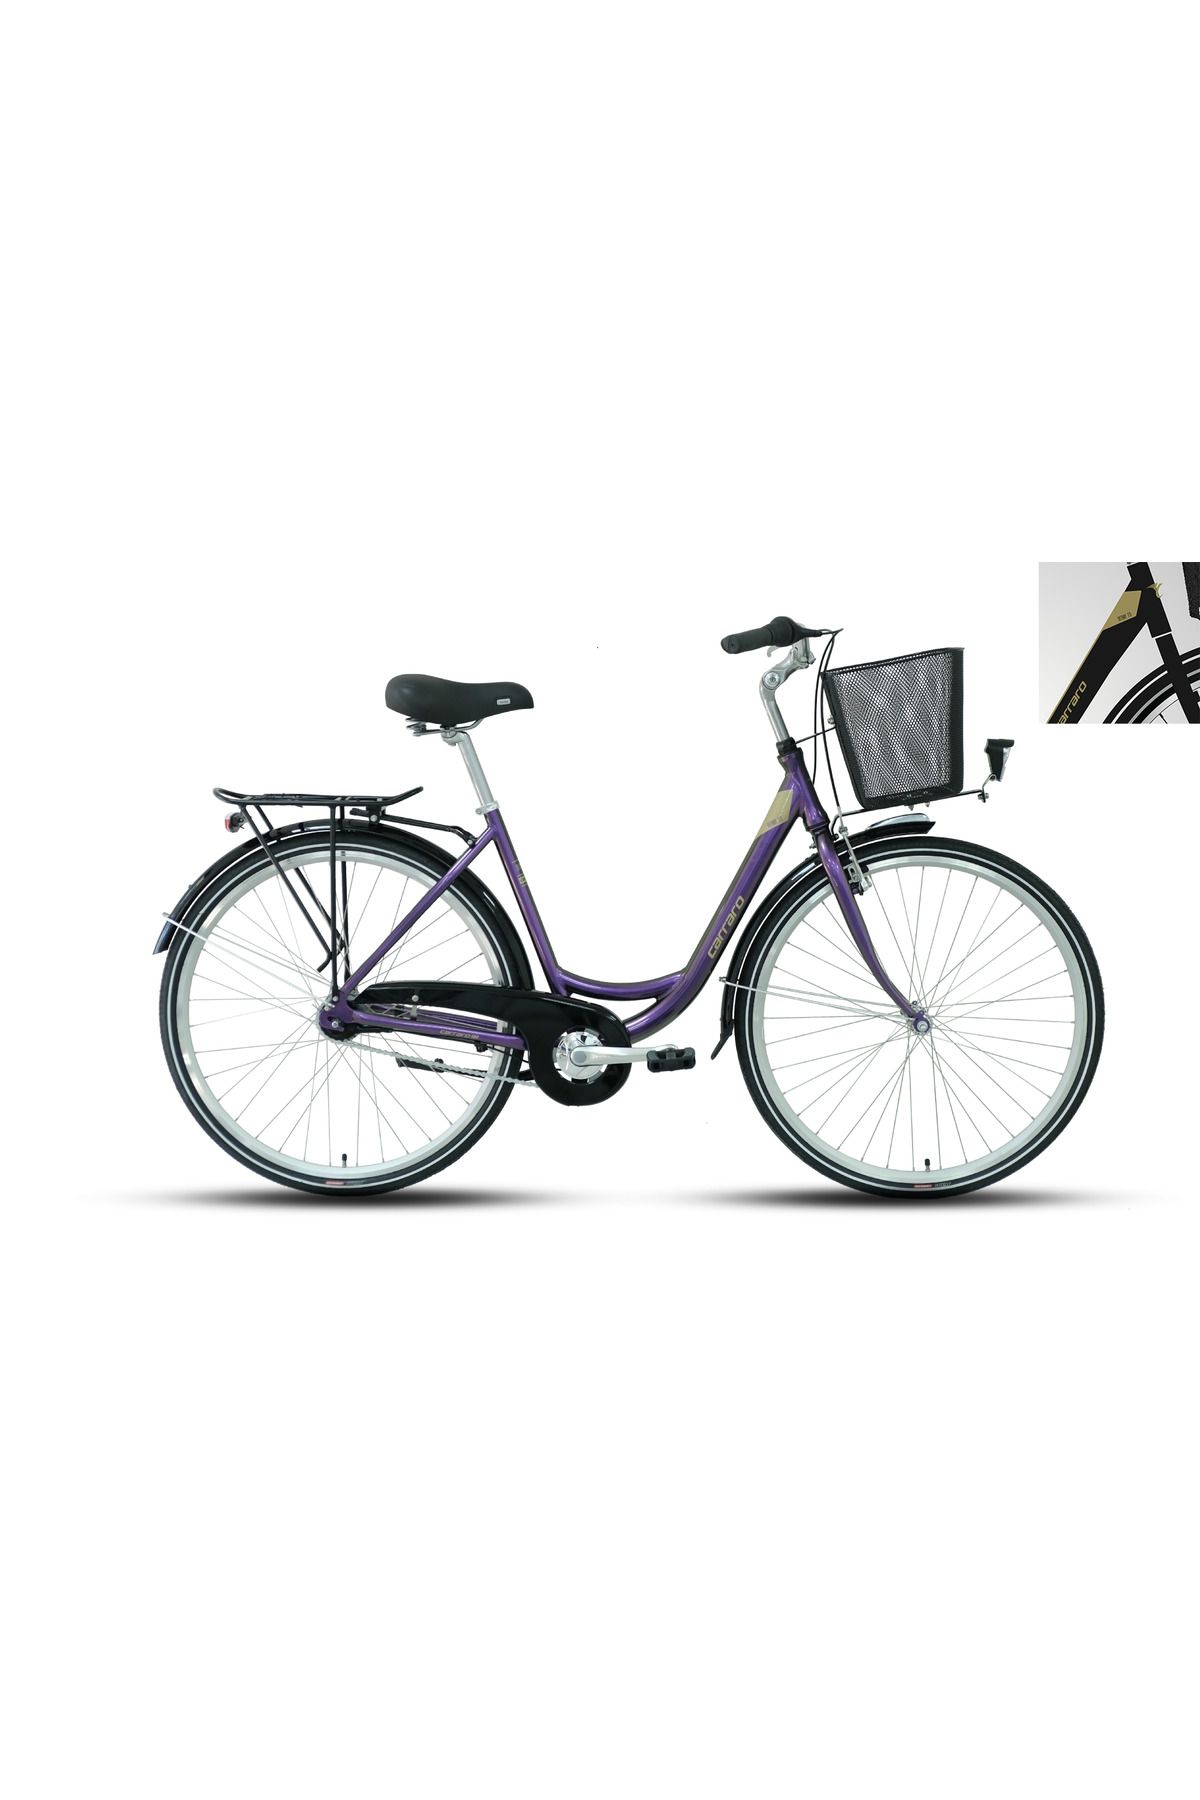 Carraro Tiffany 7.0 50 Cm Nexus 7 Vites Kontra Fren Mat Siyah-Hardal Şehir Bisikleti